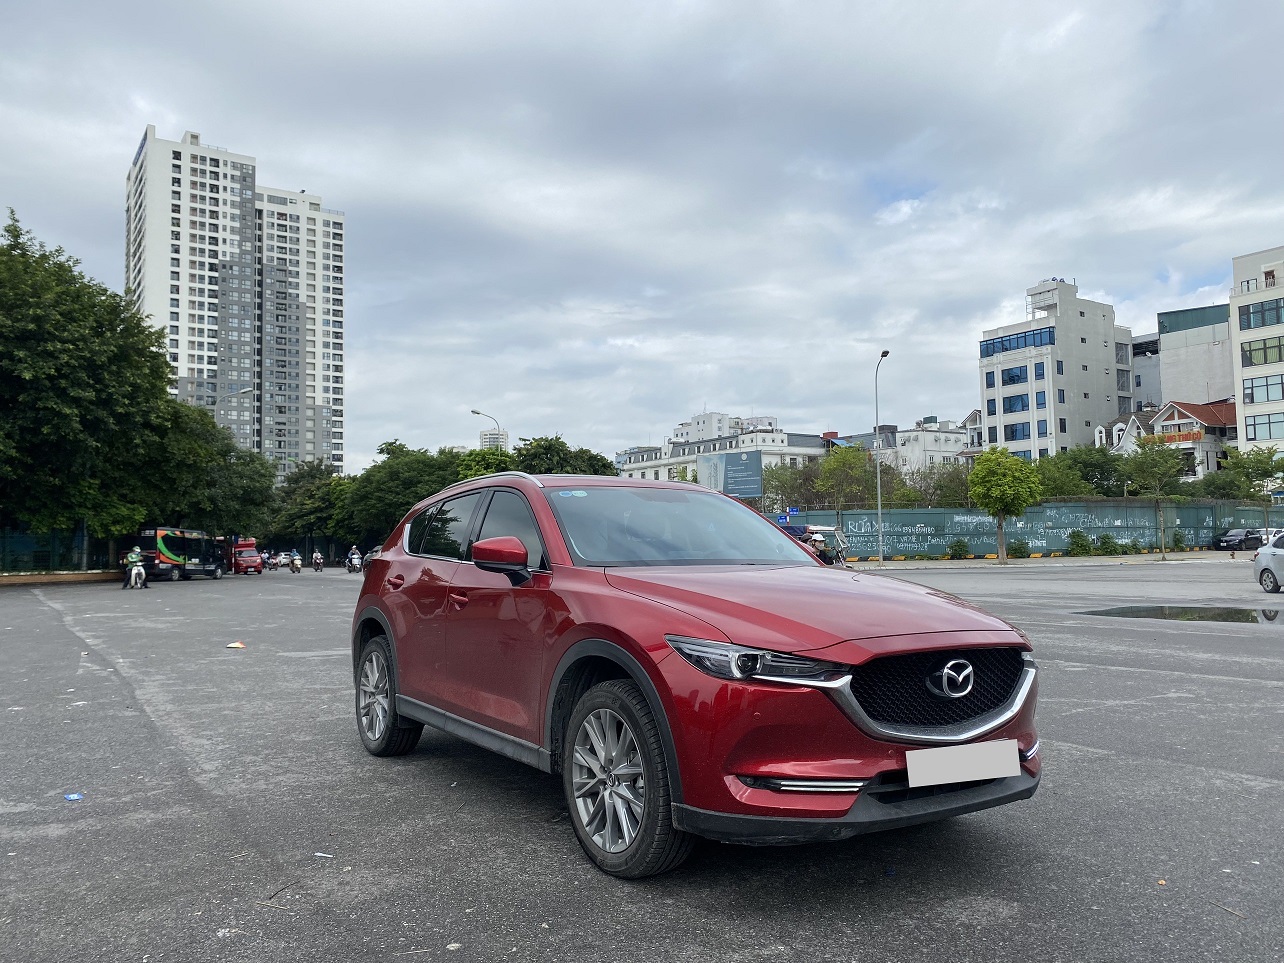 Mazda CX5 20 Luxury 2020 màu trắng Đã bán  Ecoauto Chuyên mua bán  trao đổi ký gửi Sửa chữa bảo dưỡng các loại xe ô tô